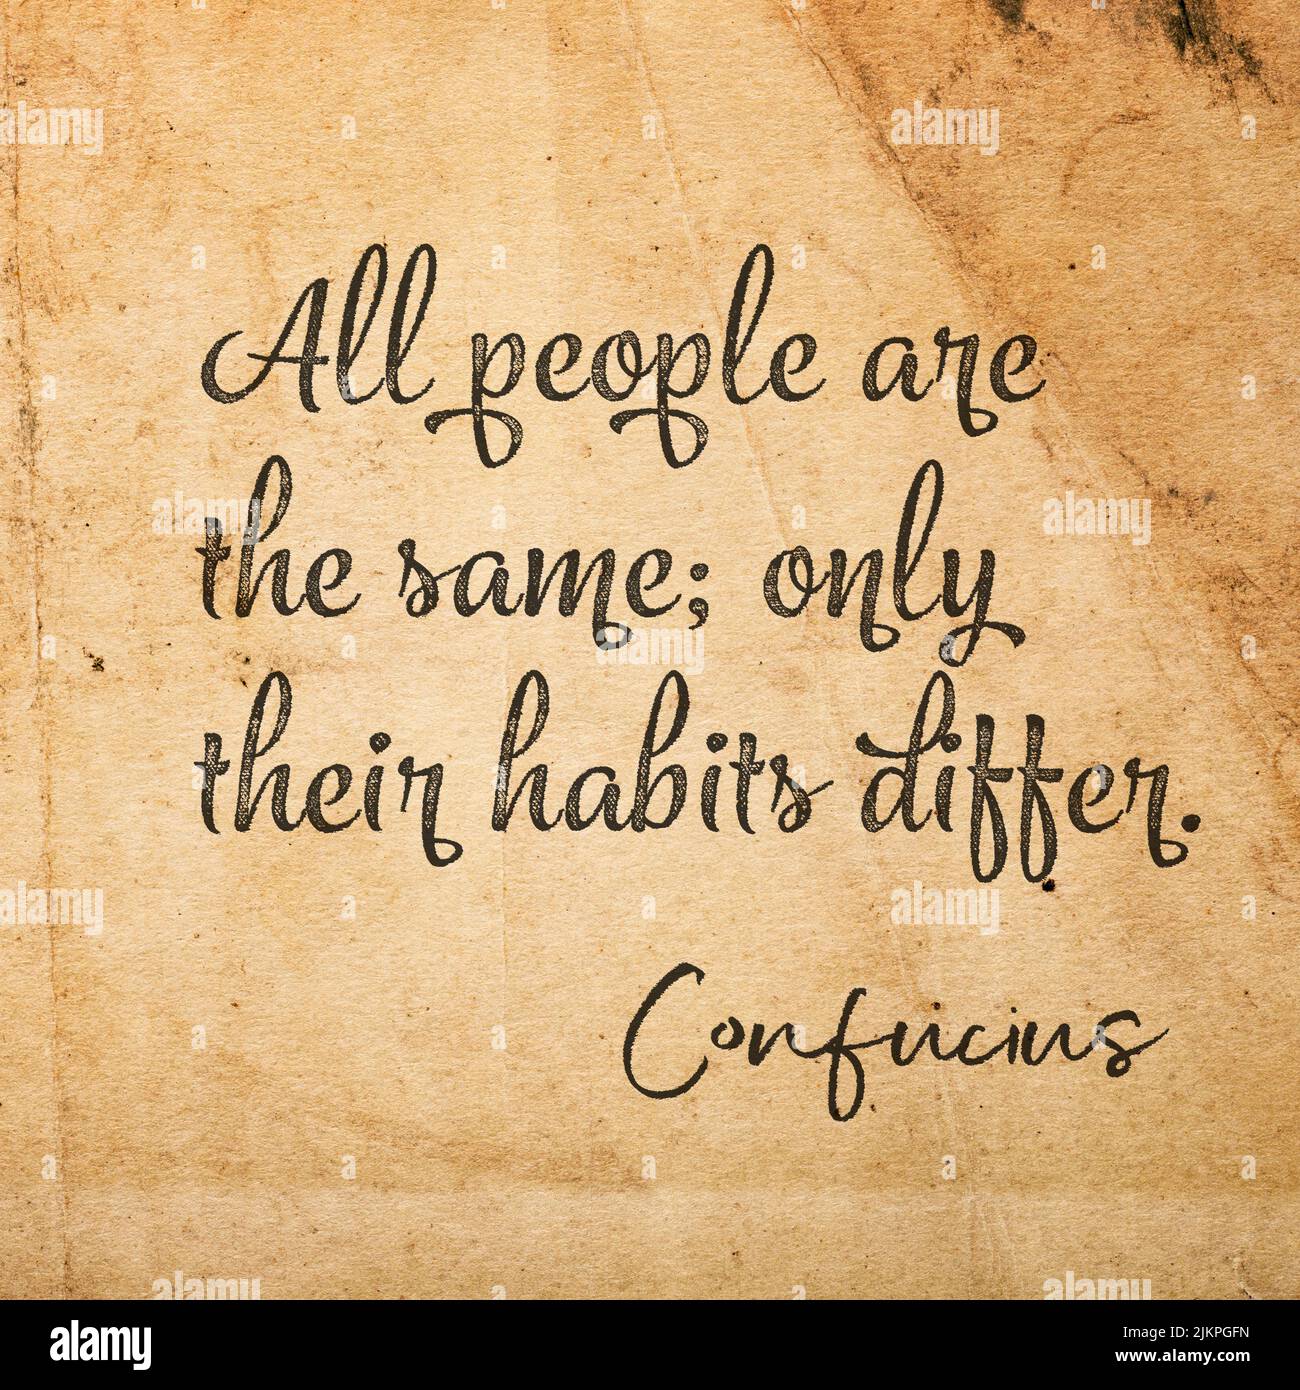 Todas las personas son iguales; sólo difieren sus hábitos - cita del antiguo filósofo chino Confucio Foto de stock